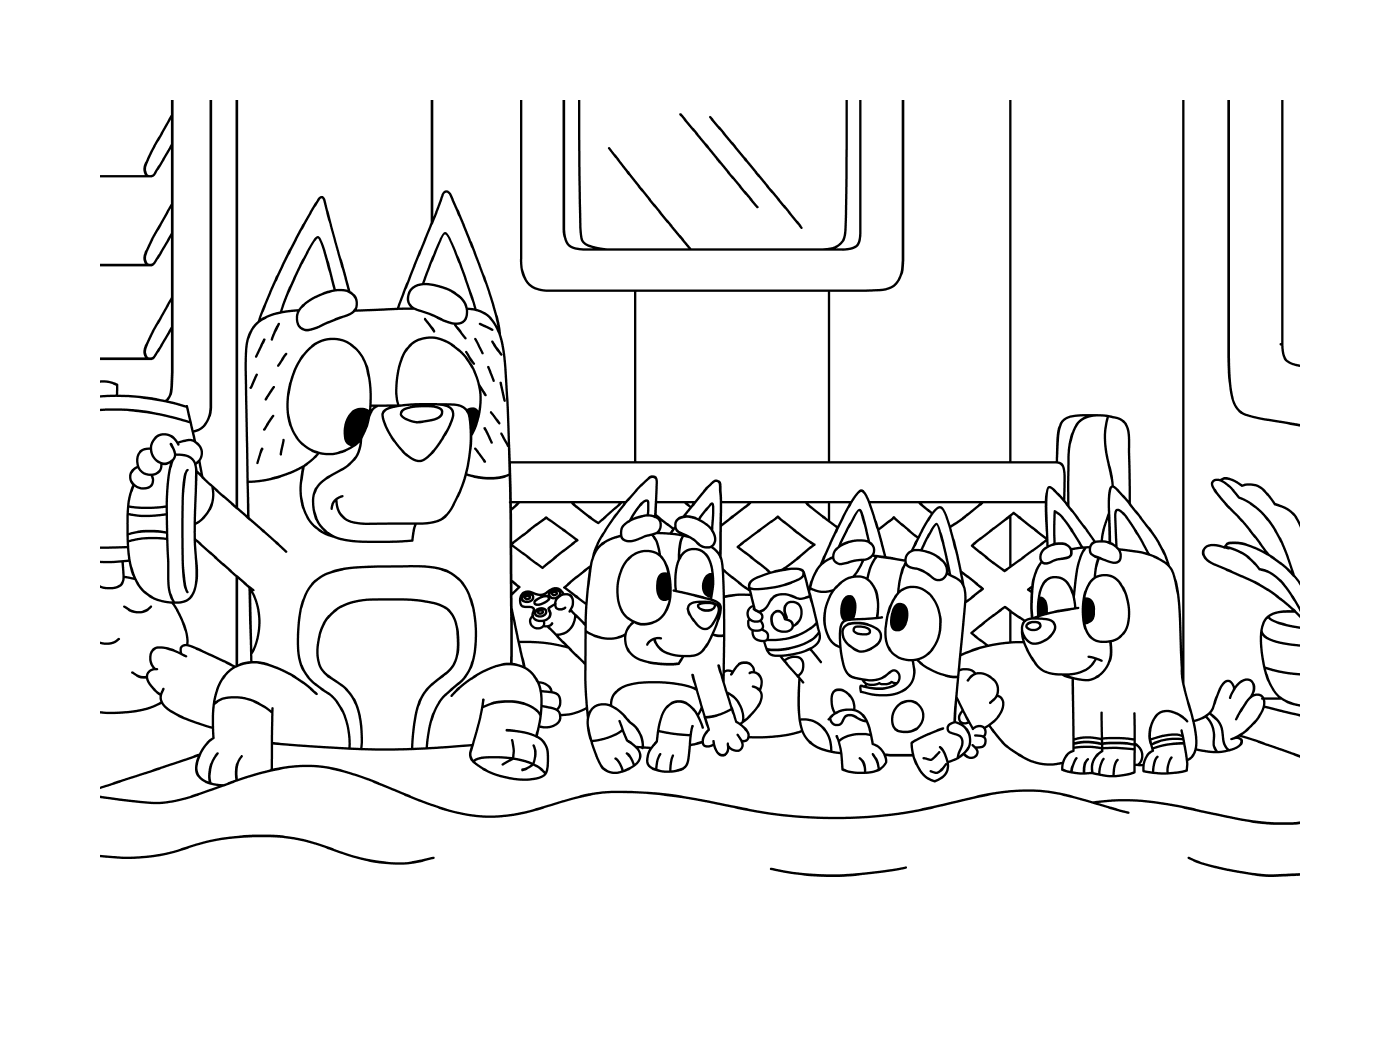  Группа кошек, сидящих рядом друг с другом 